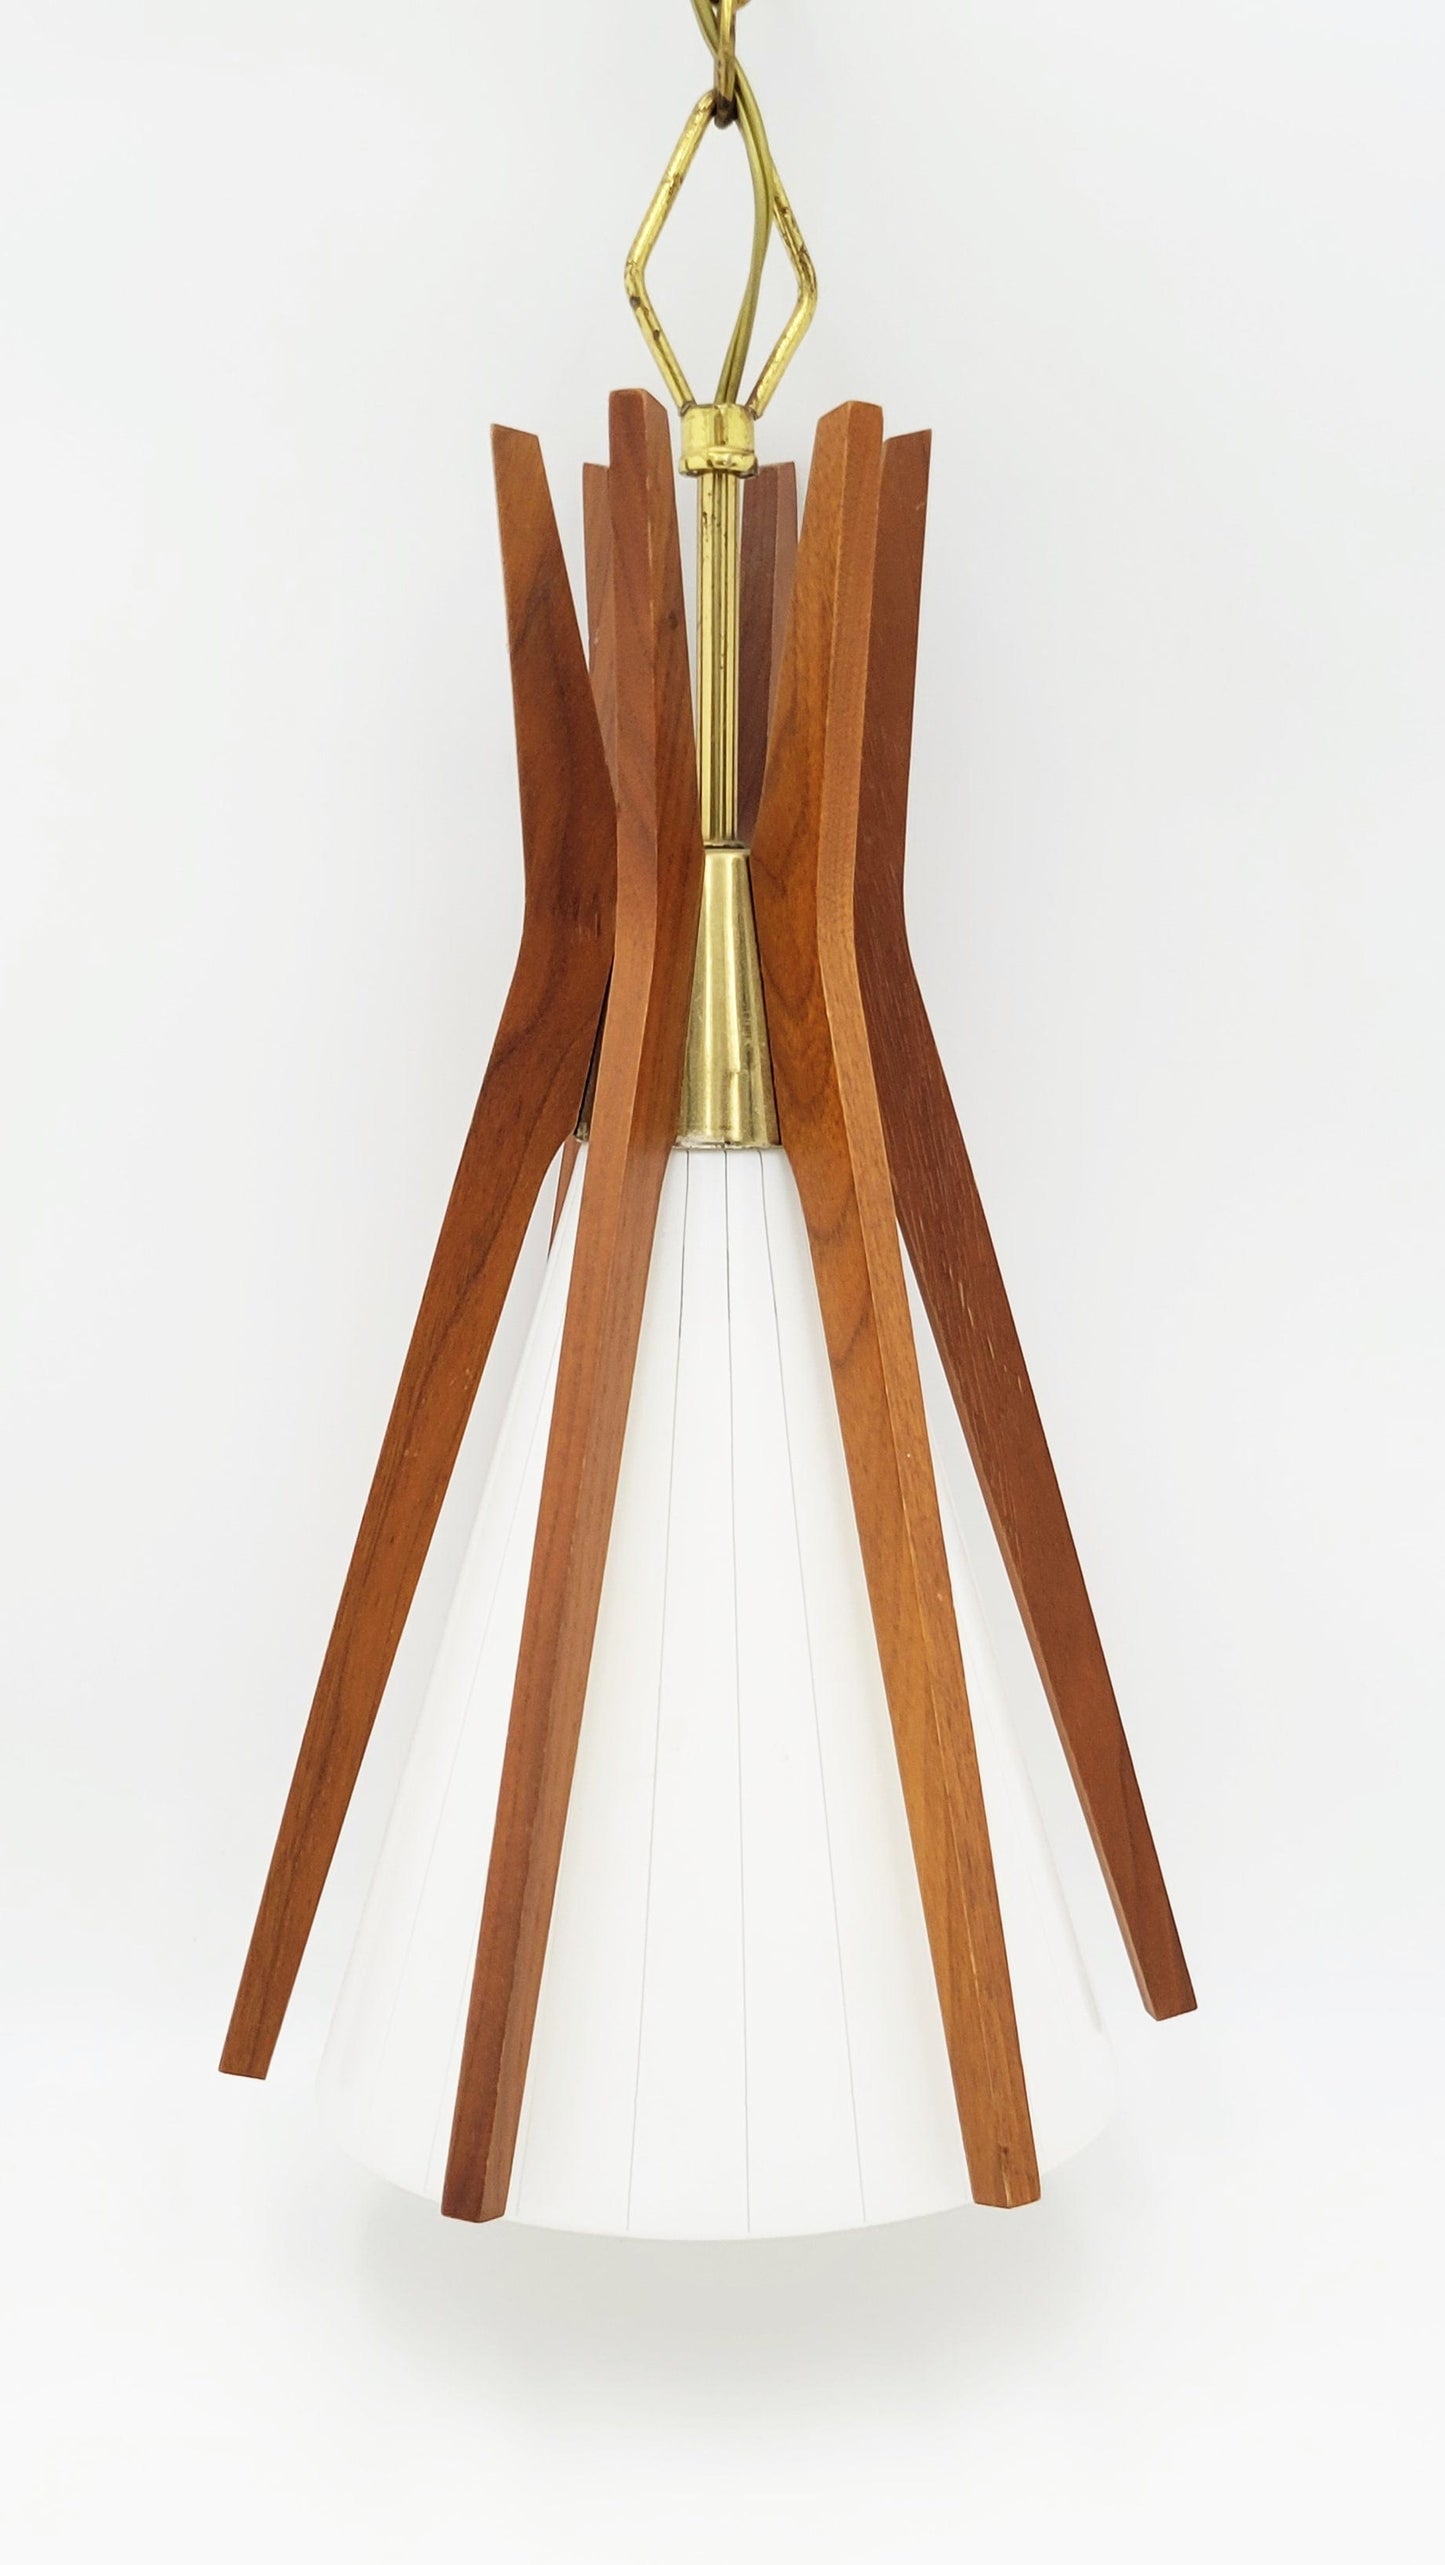 Virden Lighting Lighting Virden Danish Modernist Walnut Wood & Glass Hanging Pendant Light 1965